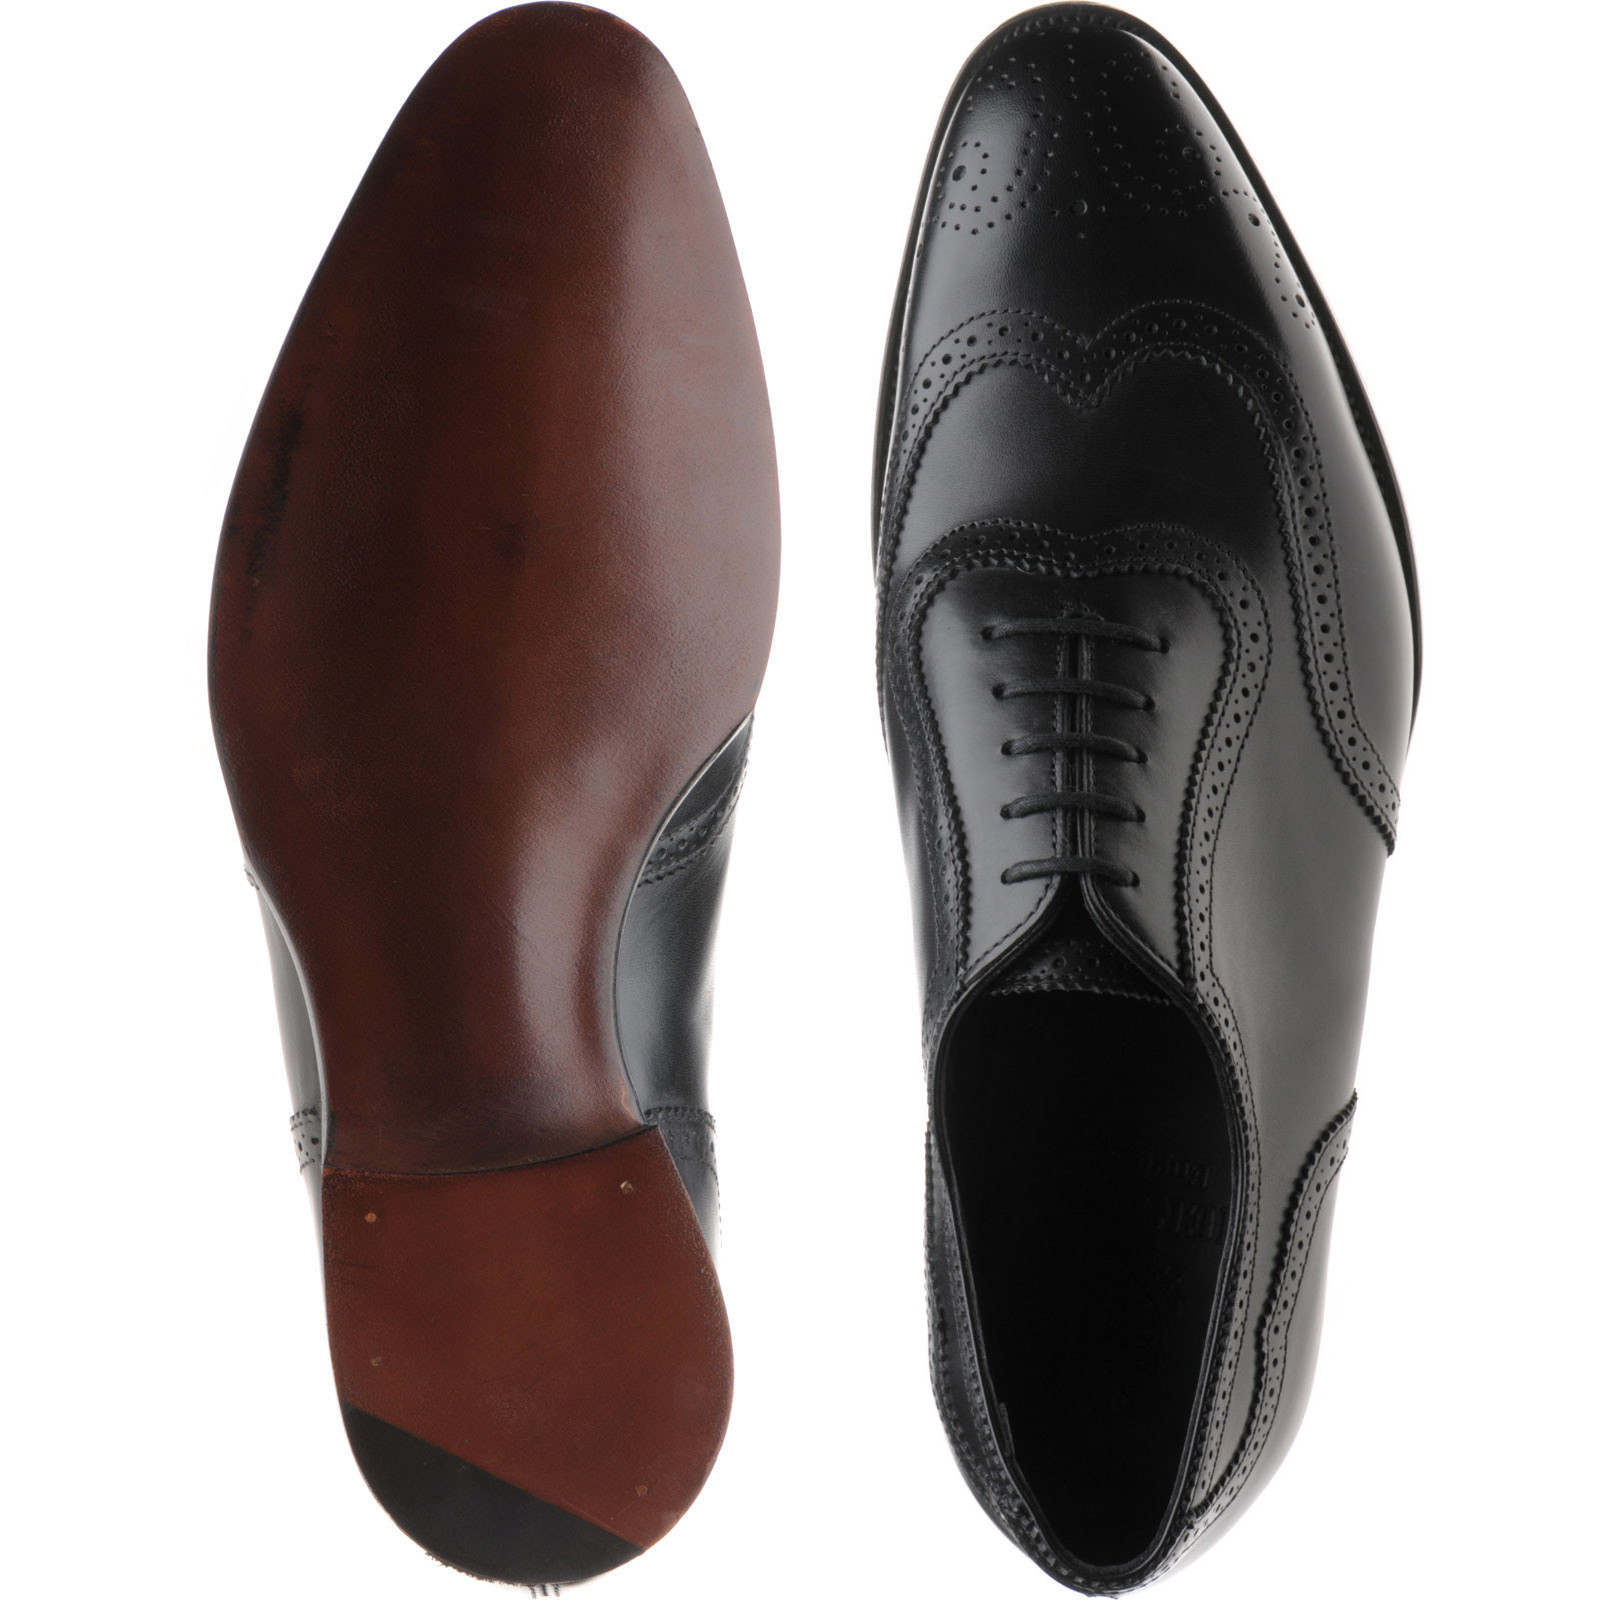 Herring shoes | Herring Premier | Henry II brogues in Black Calf at ...